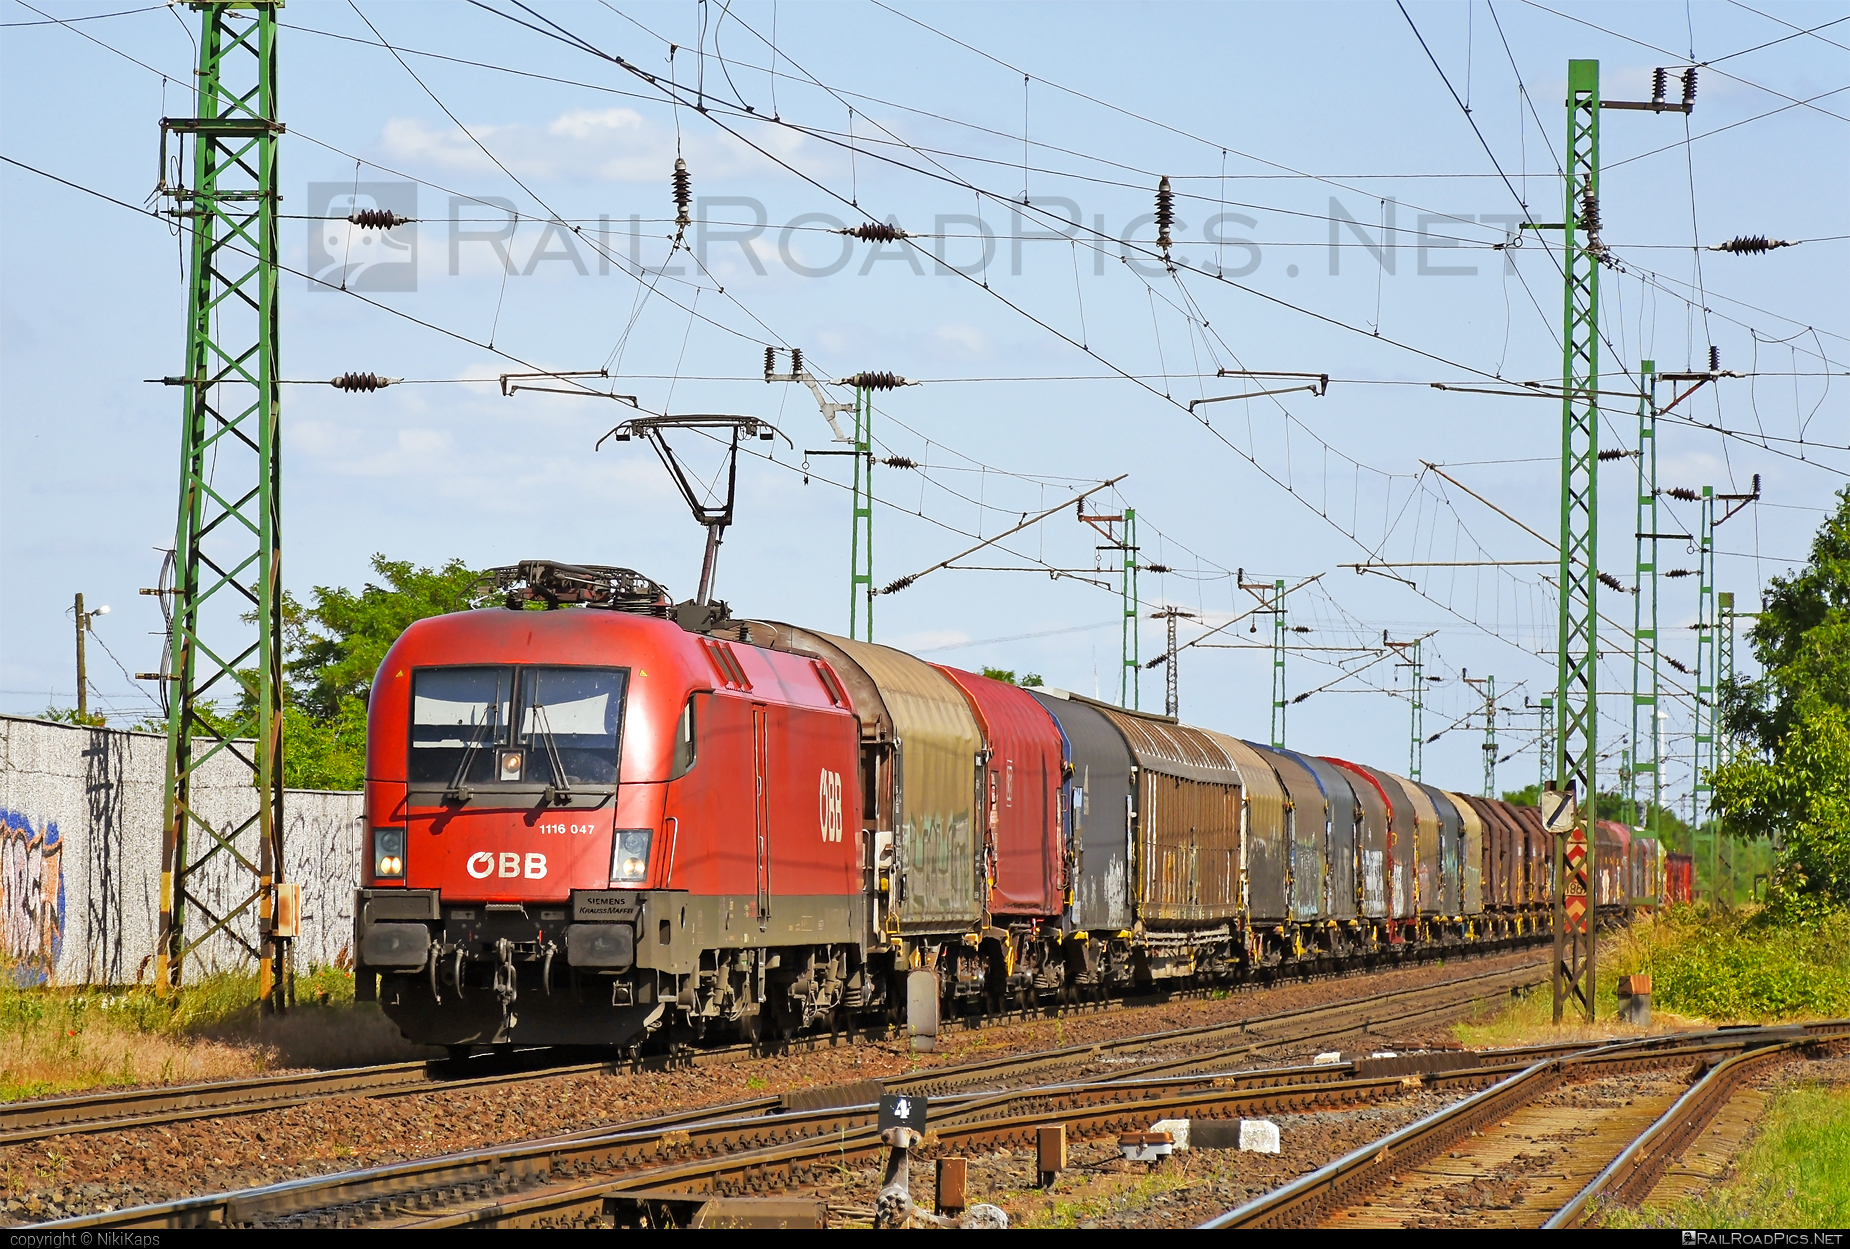 Siemens ES 64 U2 - 1116 047 operated by Rail Cargo Austria AG #es64 #es64u2 #eurosprinter #obb #osterreichischebundesbahnen #rcw #siemens #siemensEs64 #siemensEs64u2 #siemenstaurus #taurus #tauruslocomotive